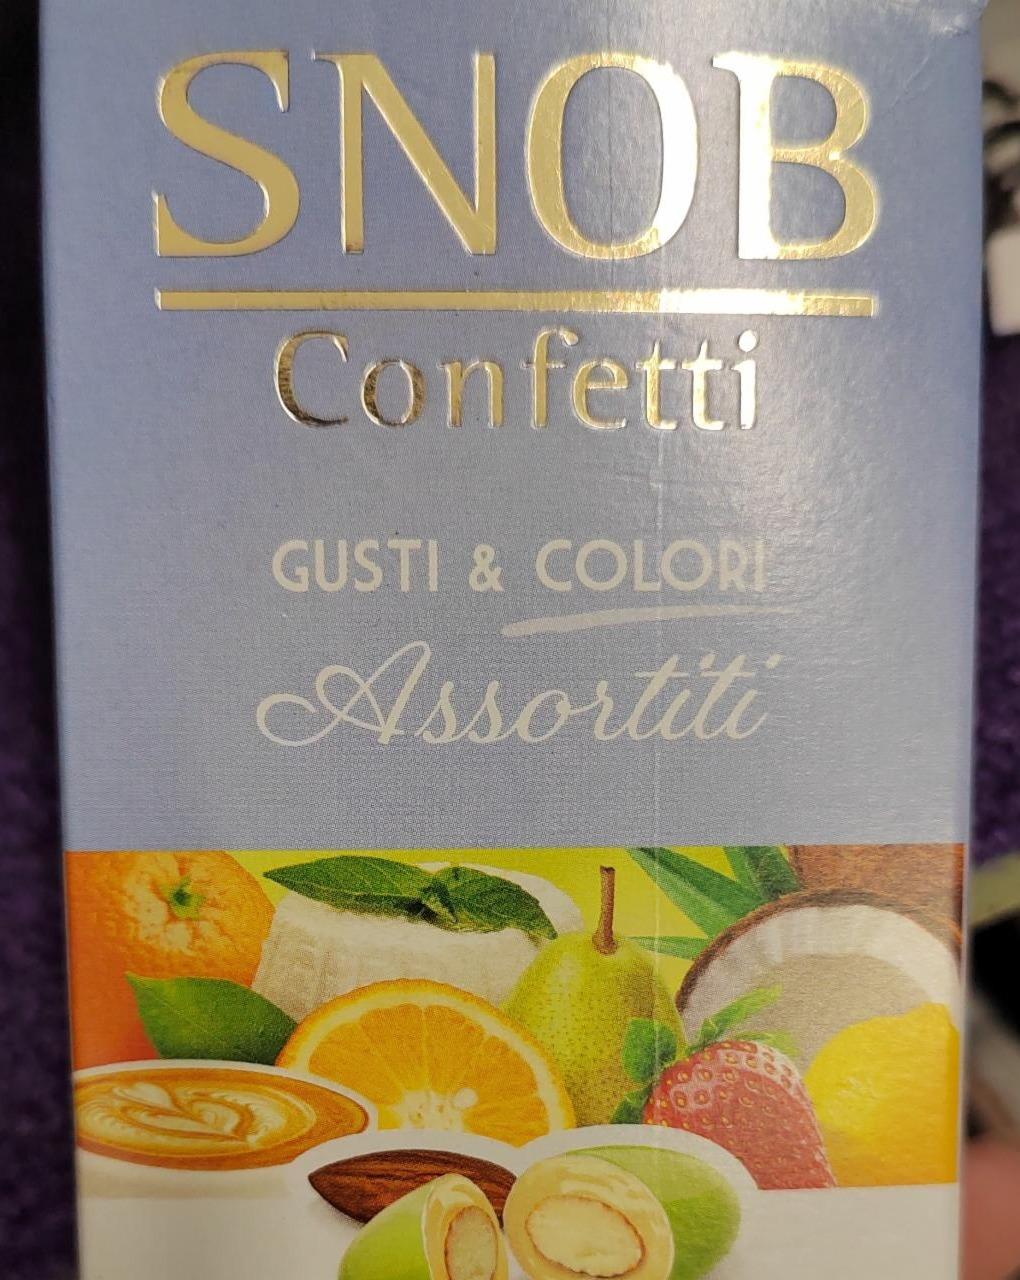 Fotografie - Confetti Gusti & Colori Assortiti Snob